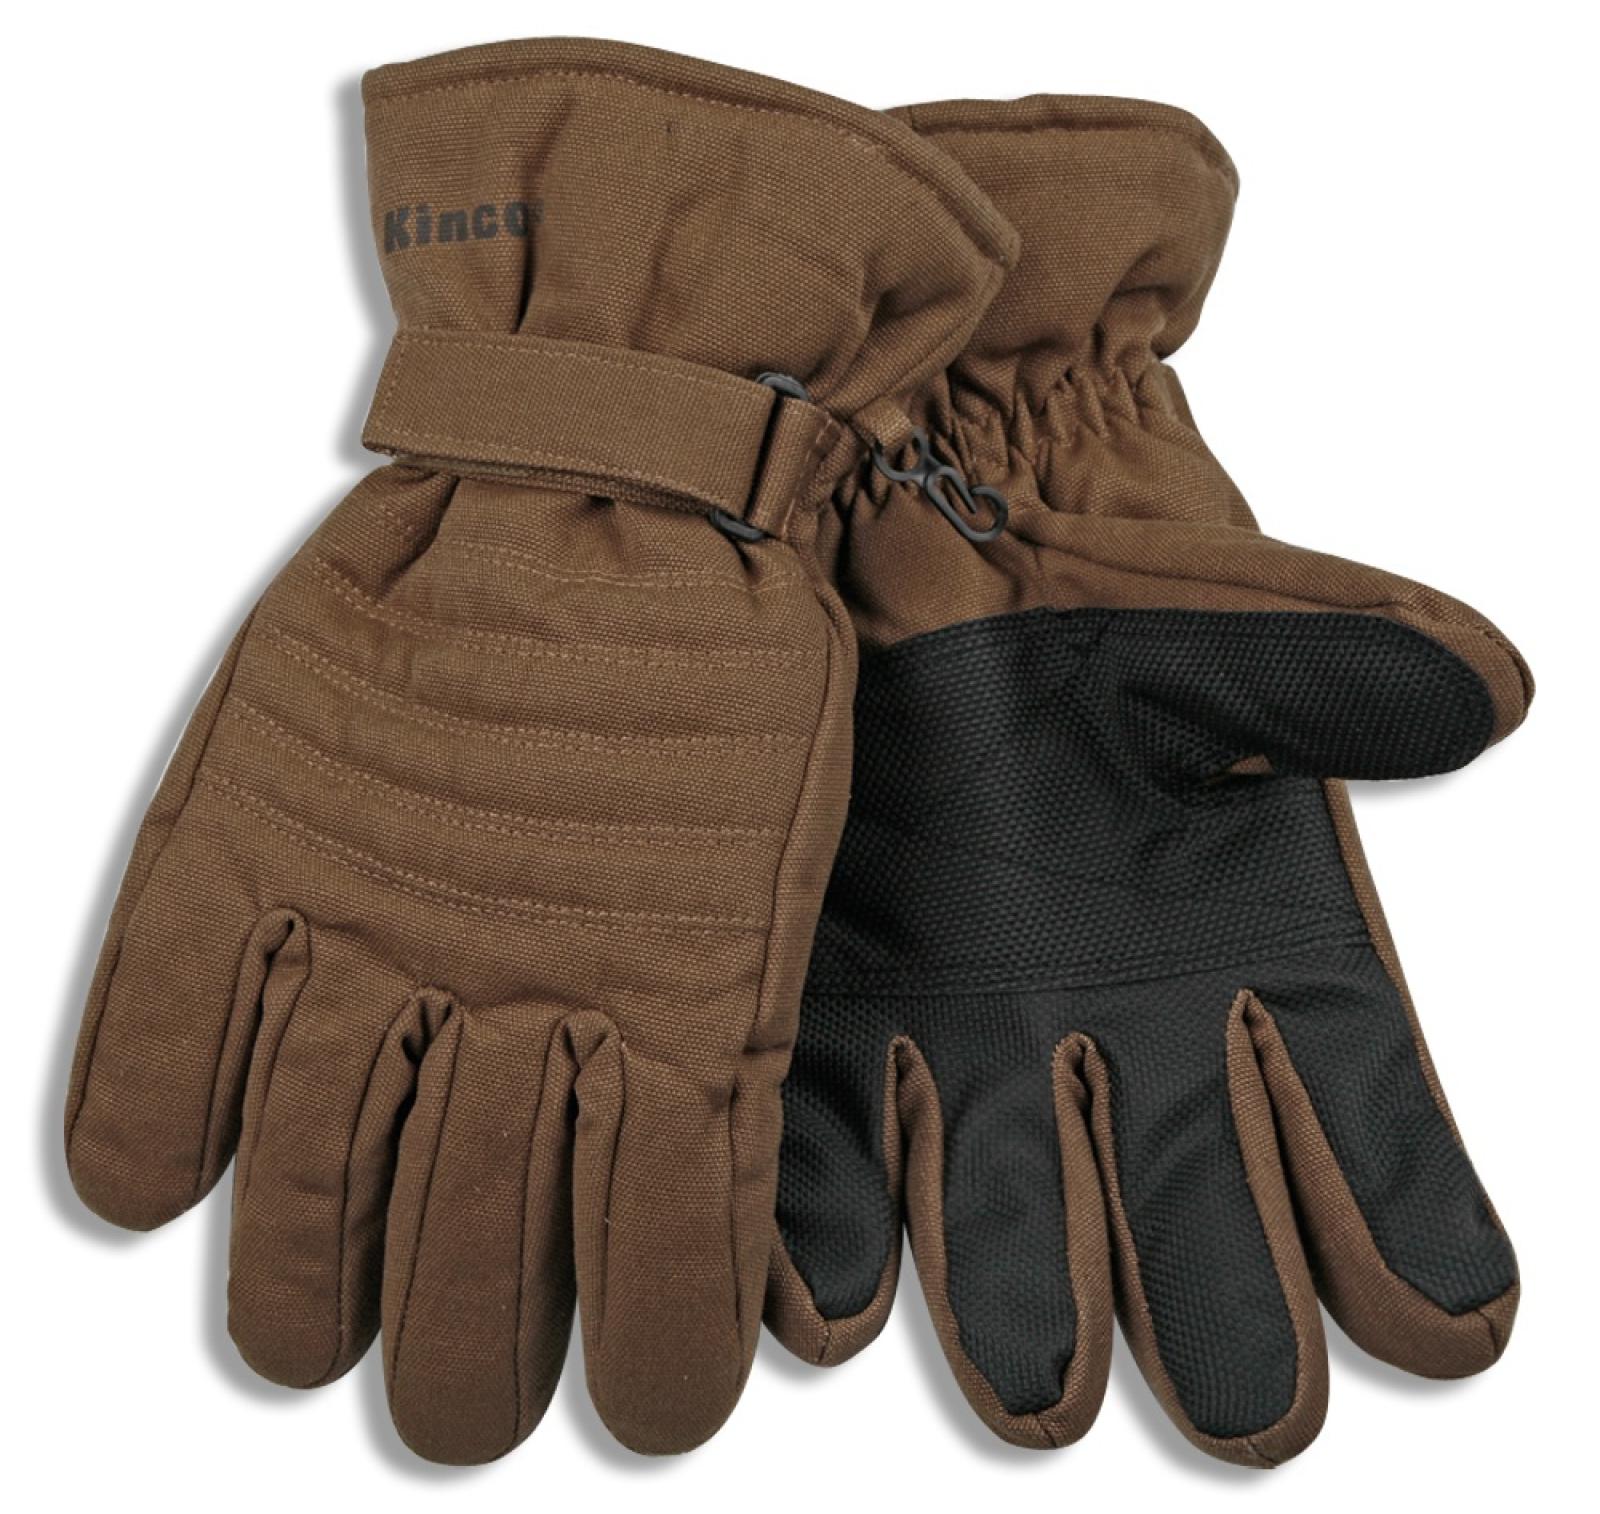 Kinco Men's Brown Thermal Lined Ski Gloves